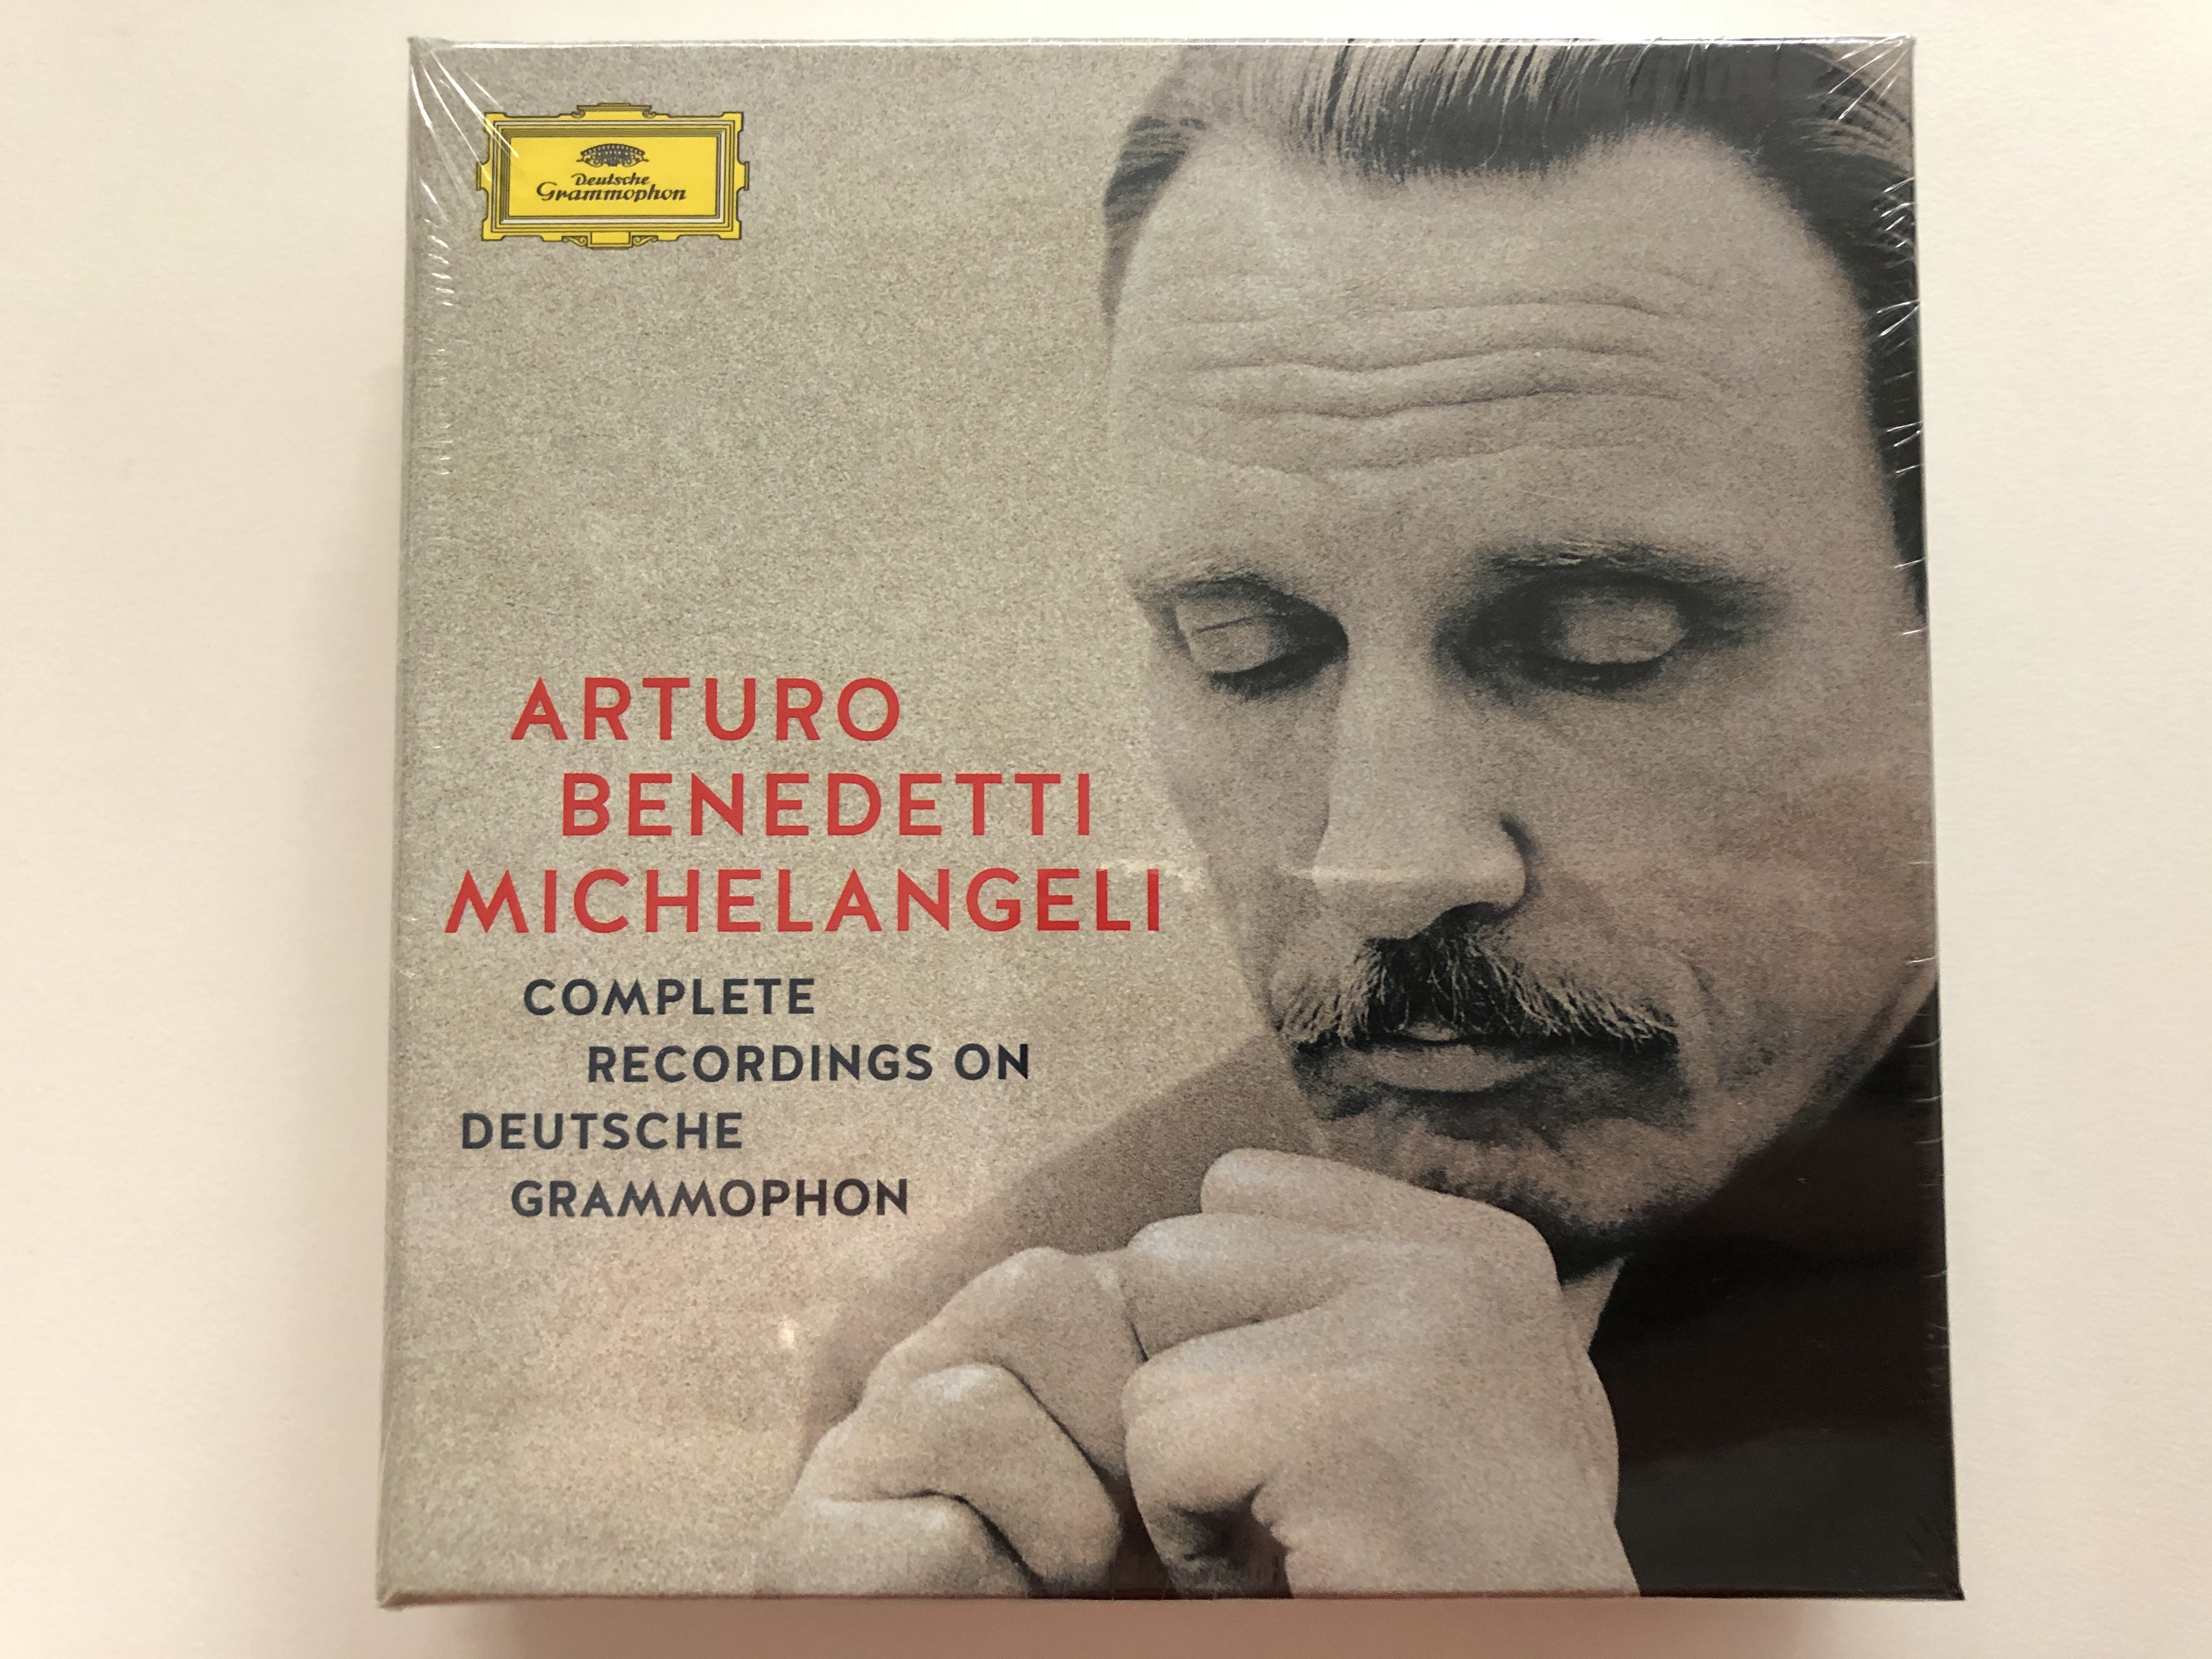 arturo-benedetti-michelangeli-complete-recordings-on-deutsche-grammophon-deutsche-grammophon-10x-audio-cd-2016-00289-479-6277-1-.jpg